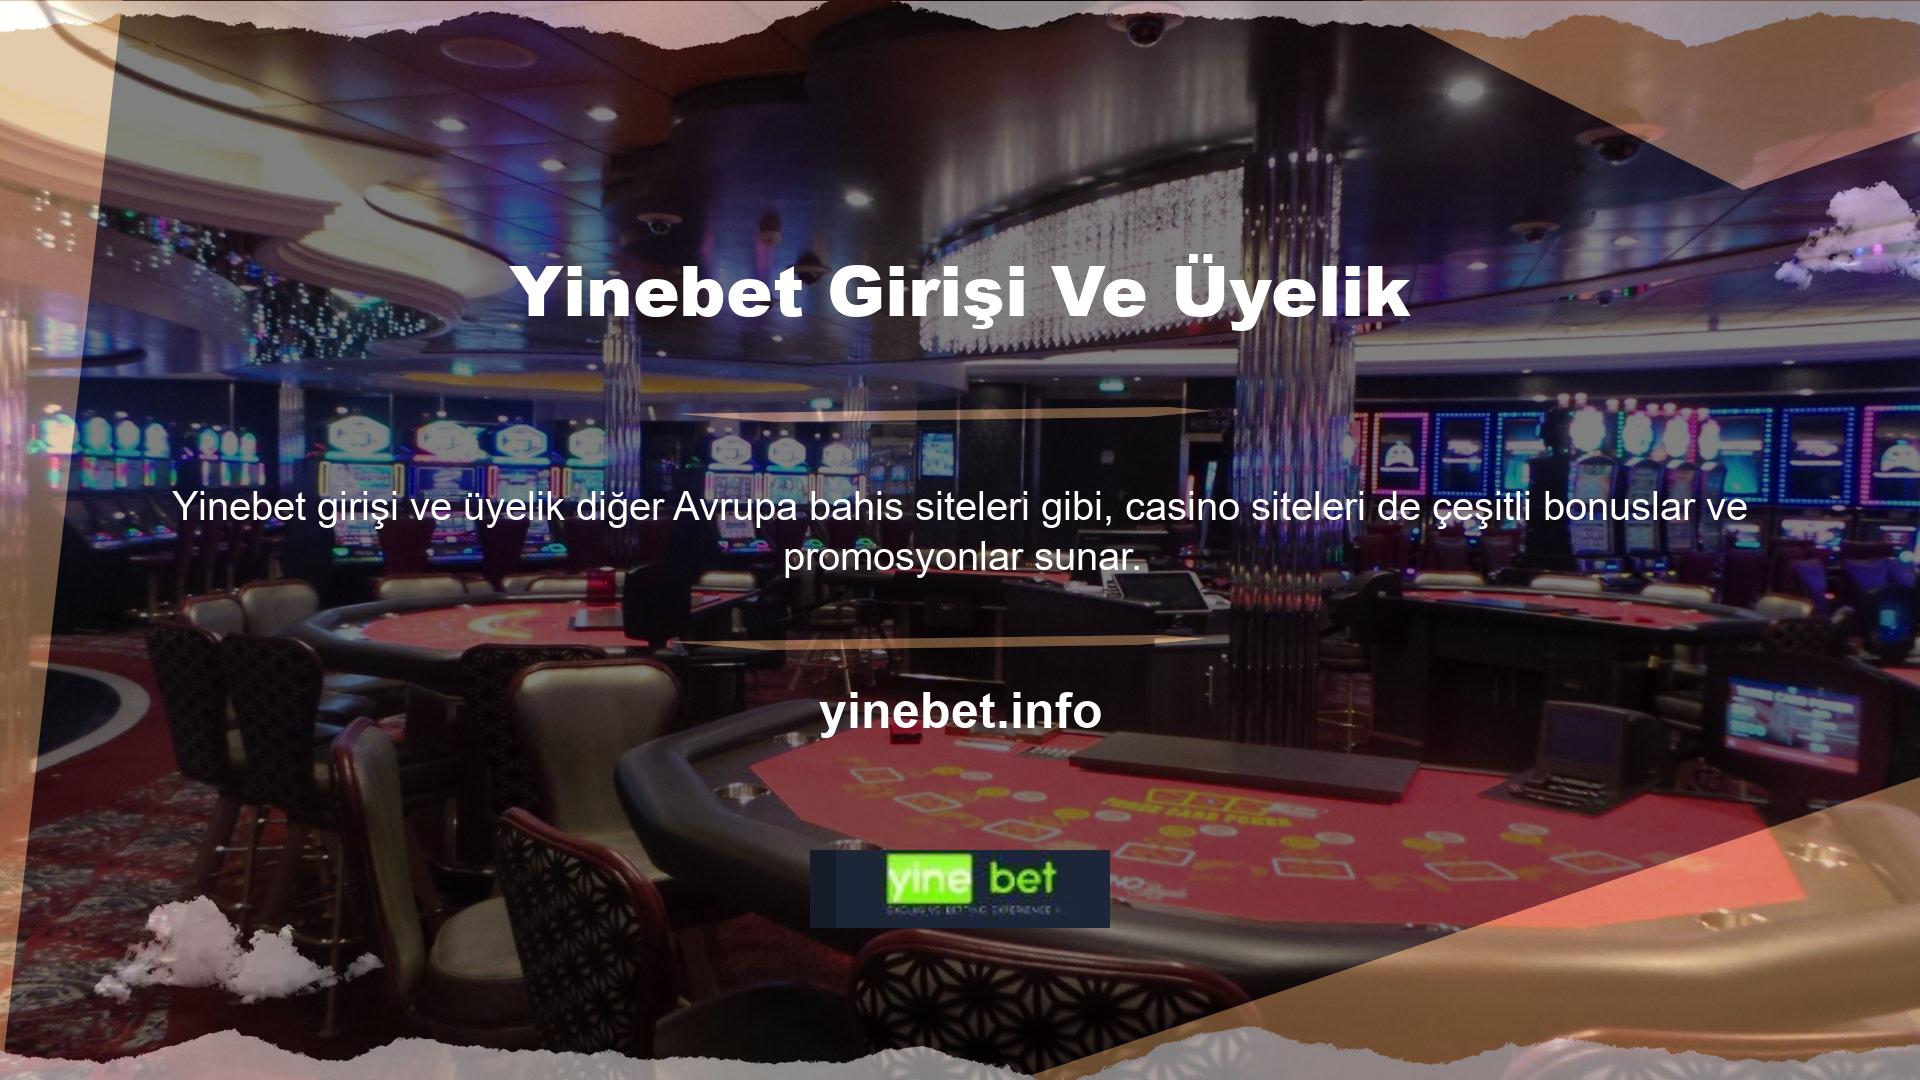 En iyi casino sitelerinden biri olan Yinebet, müşterilerine çeşitli bonuslar sunmaktadır